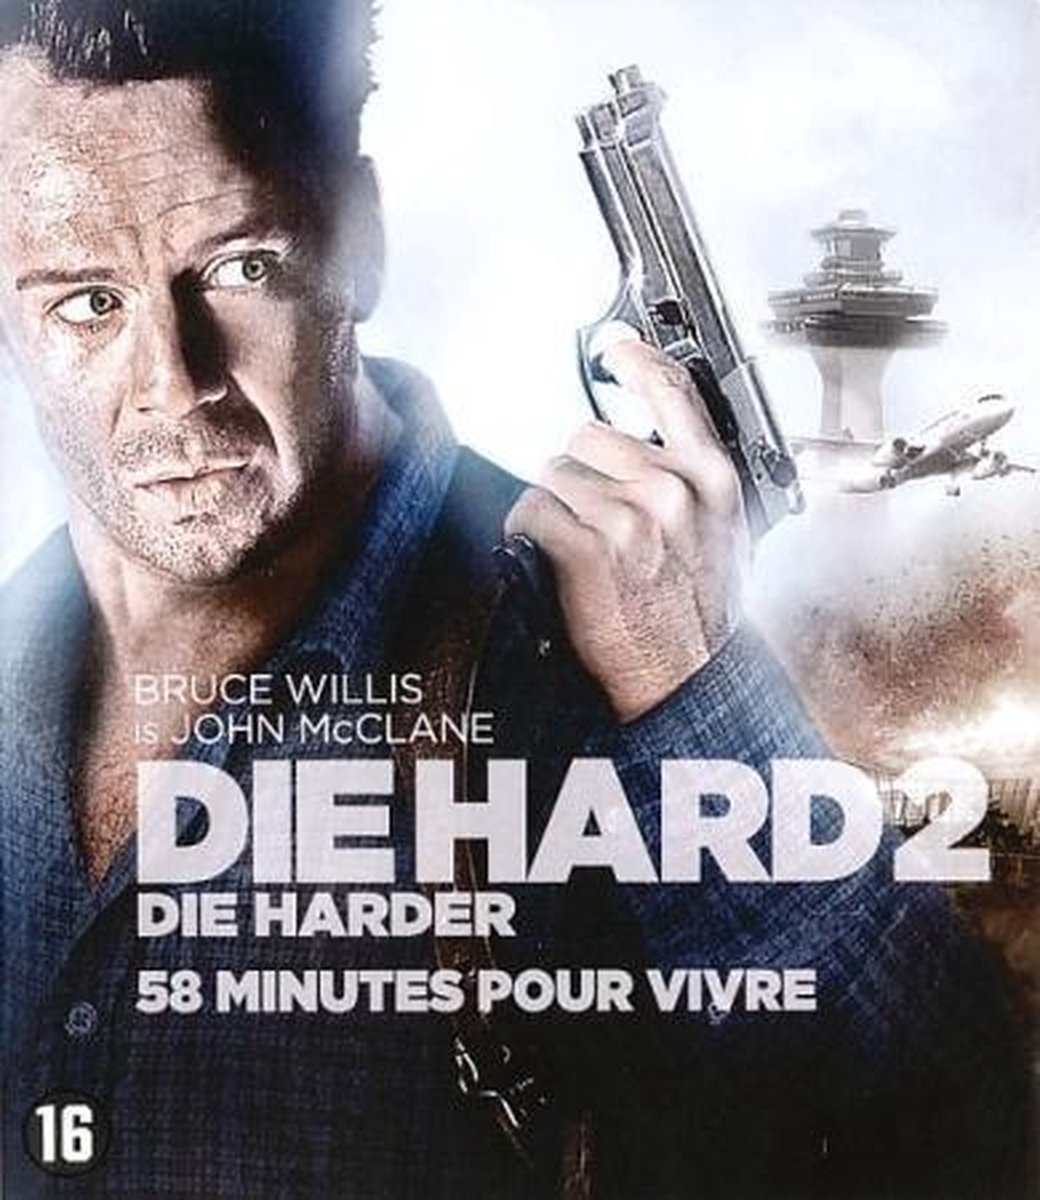 Die Hard 2 (Blu-ray) - Disney Movies